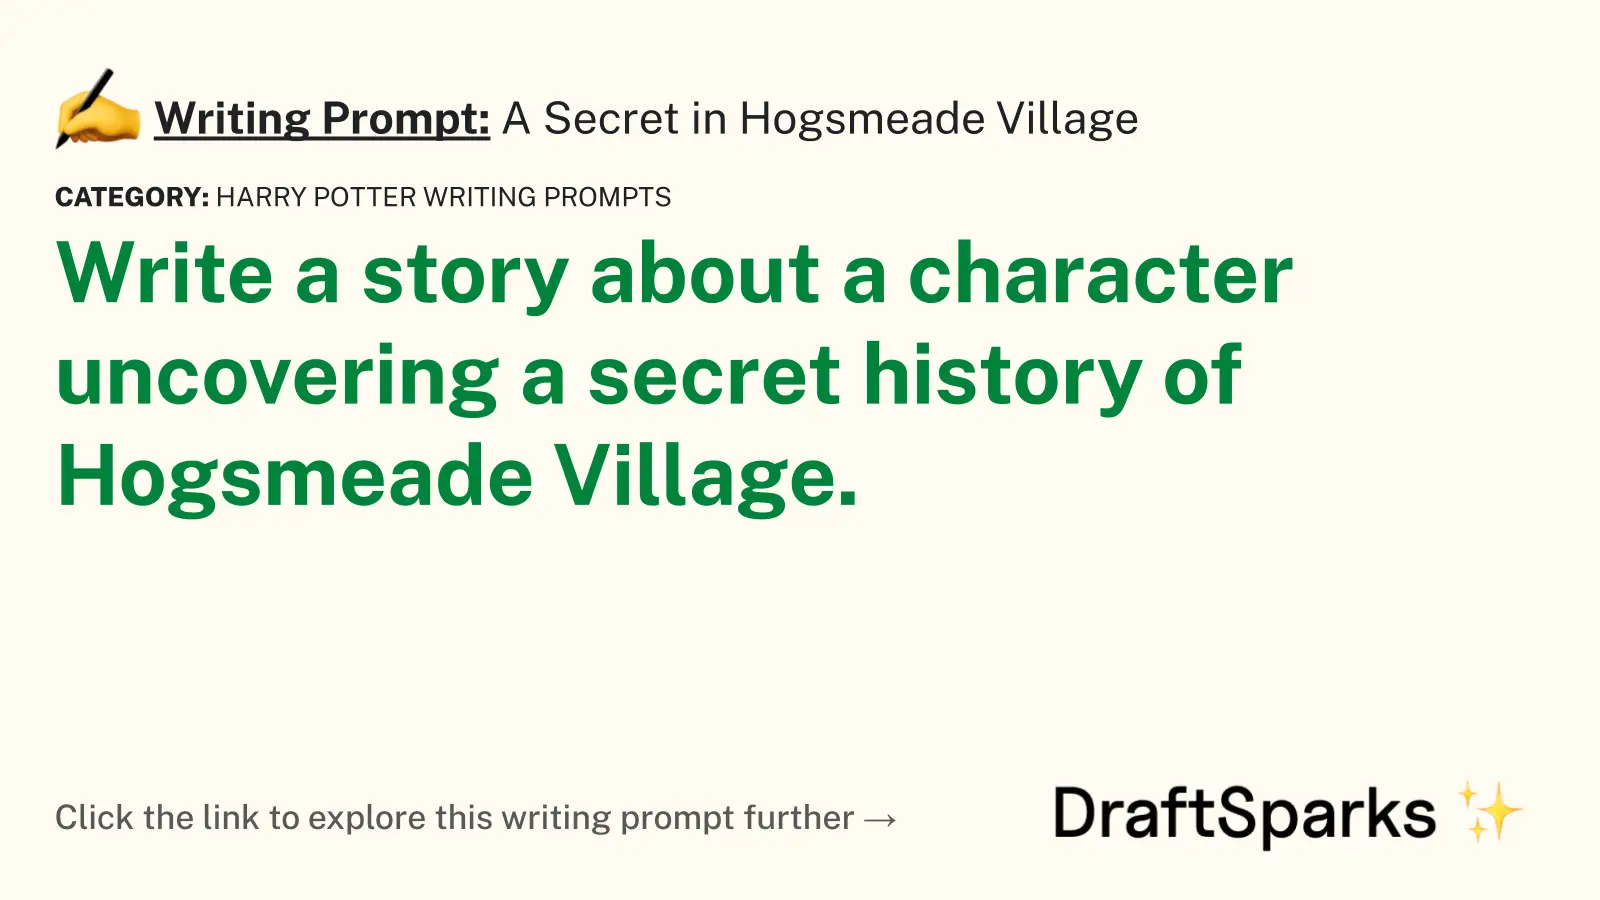 A Secret in Hogsmeade Village